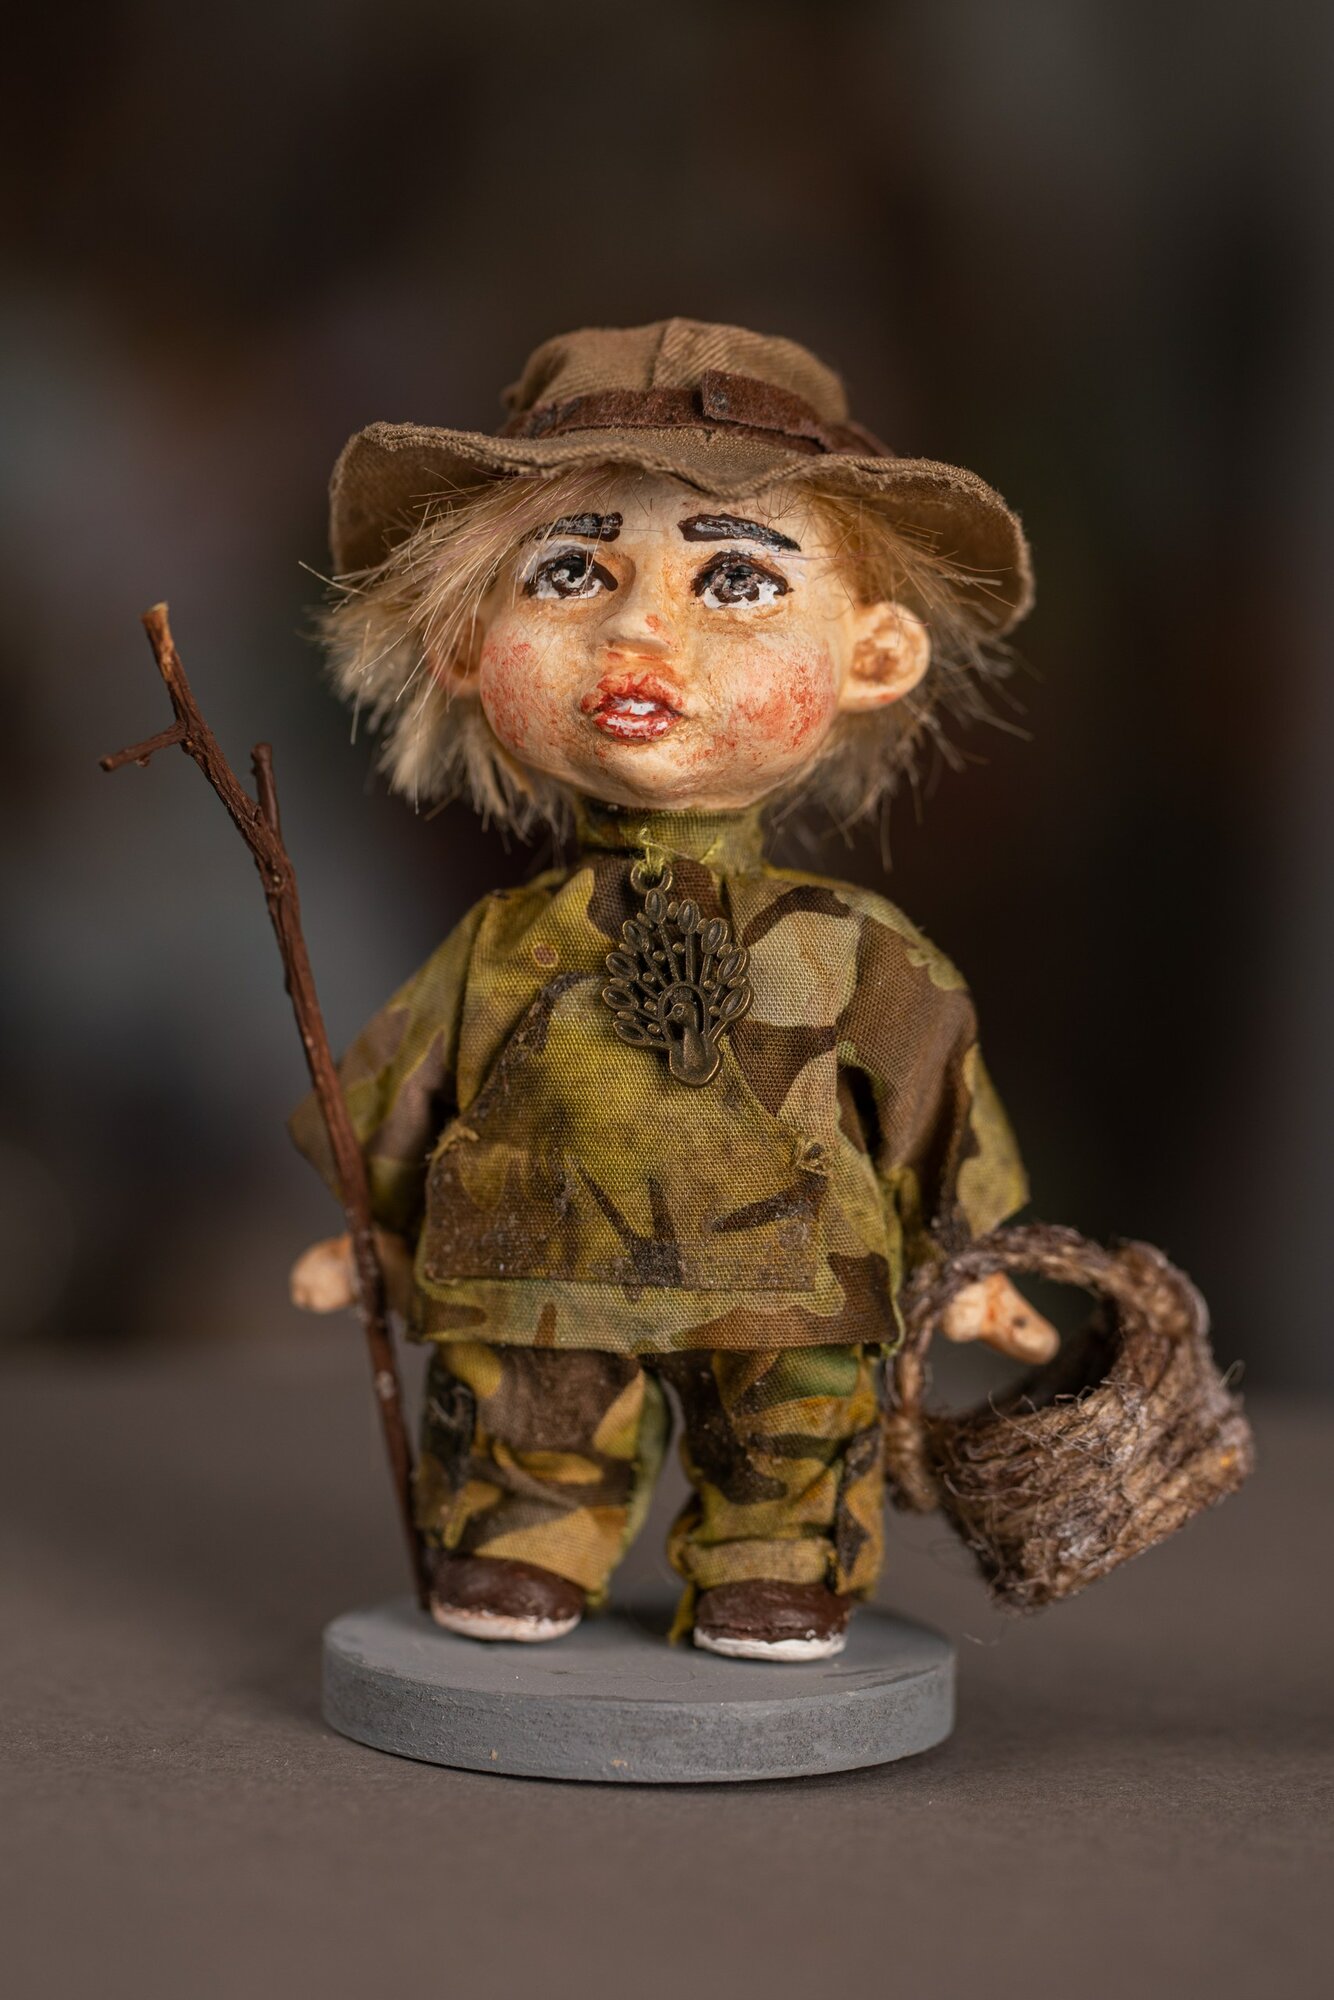 Авторская кукла "Малыш грибник" ручной работы, интерьерная